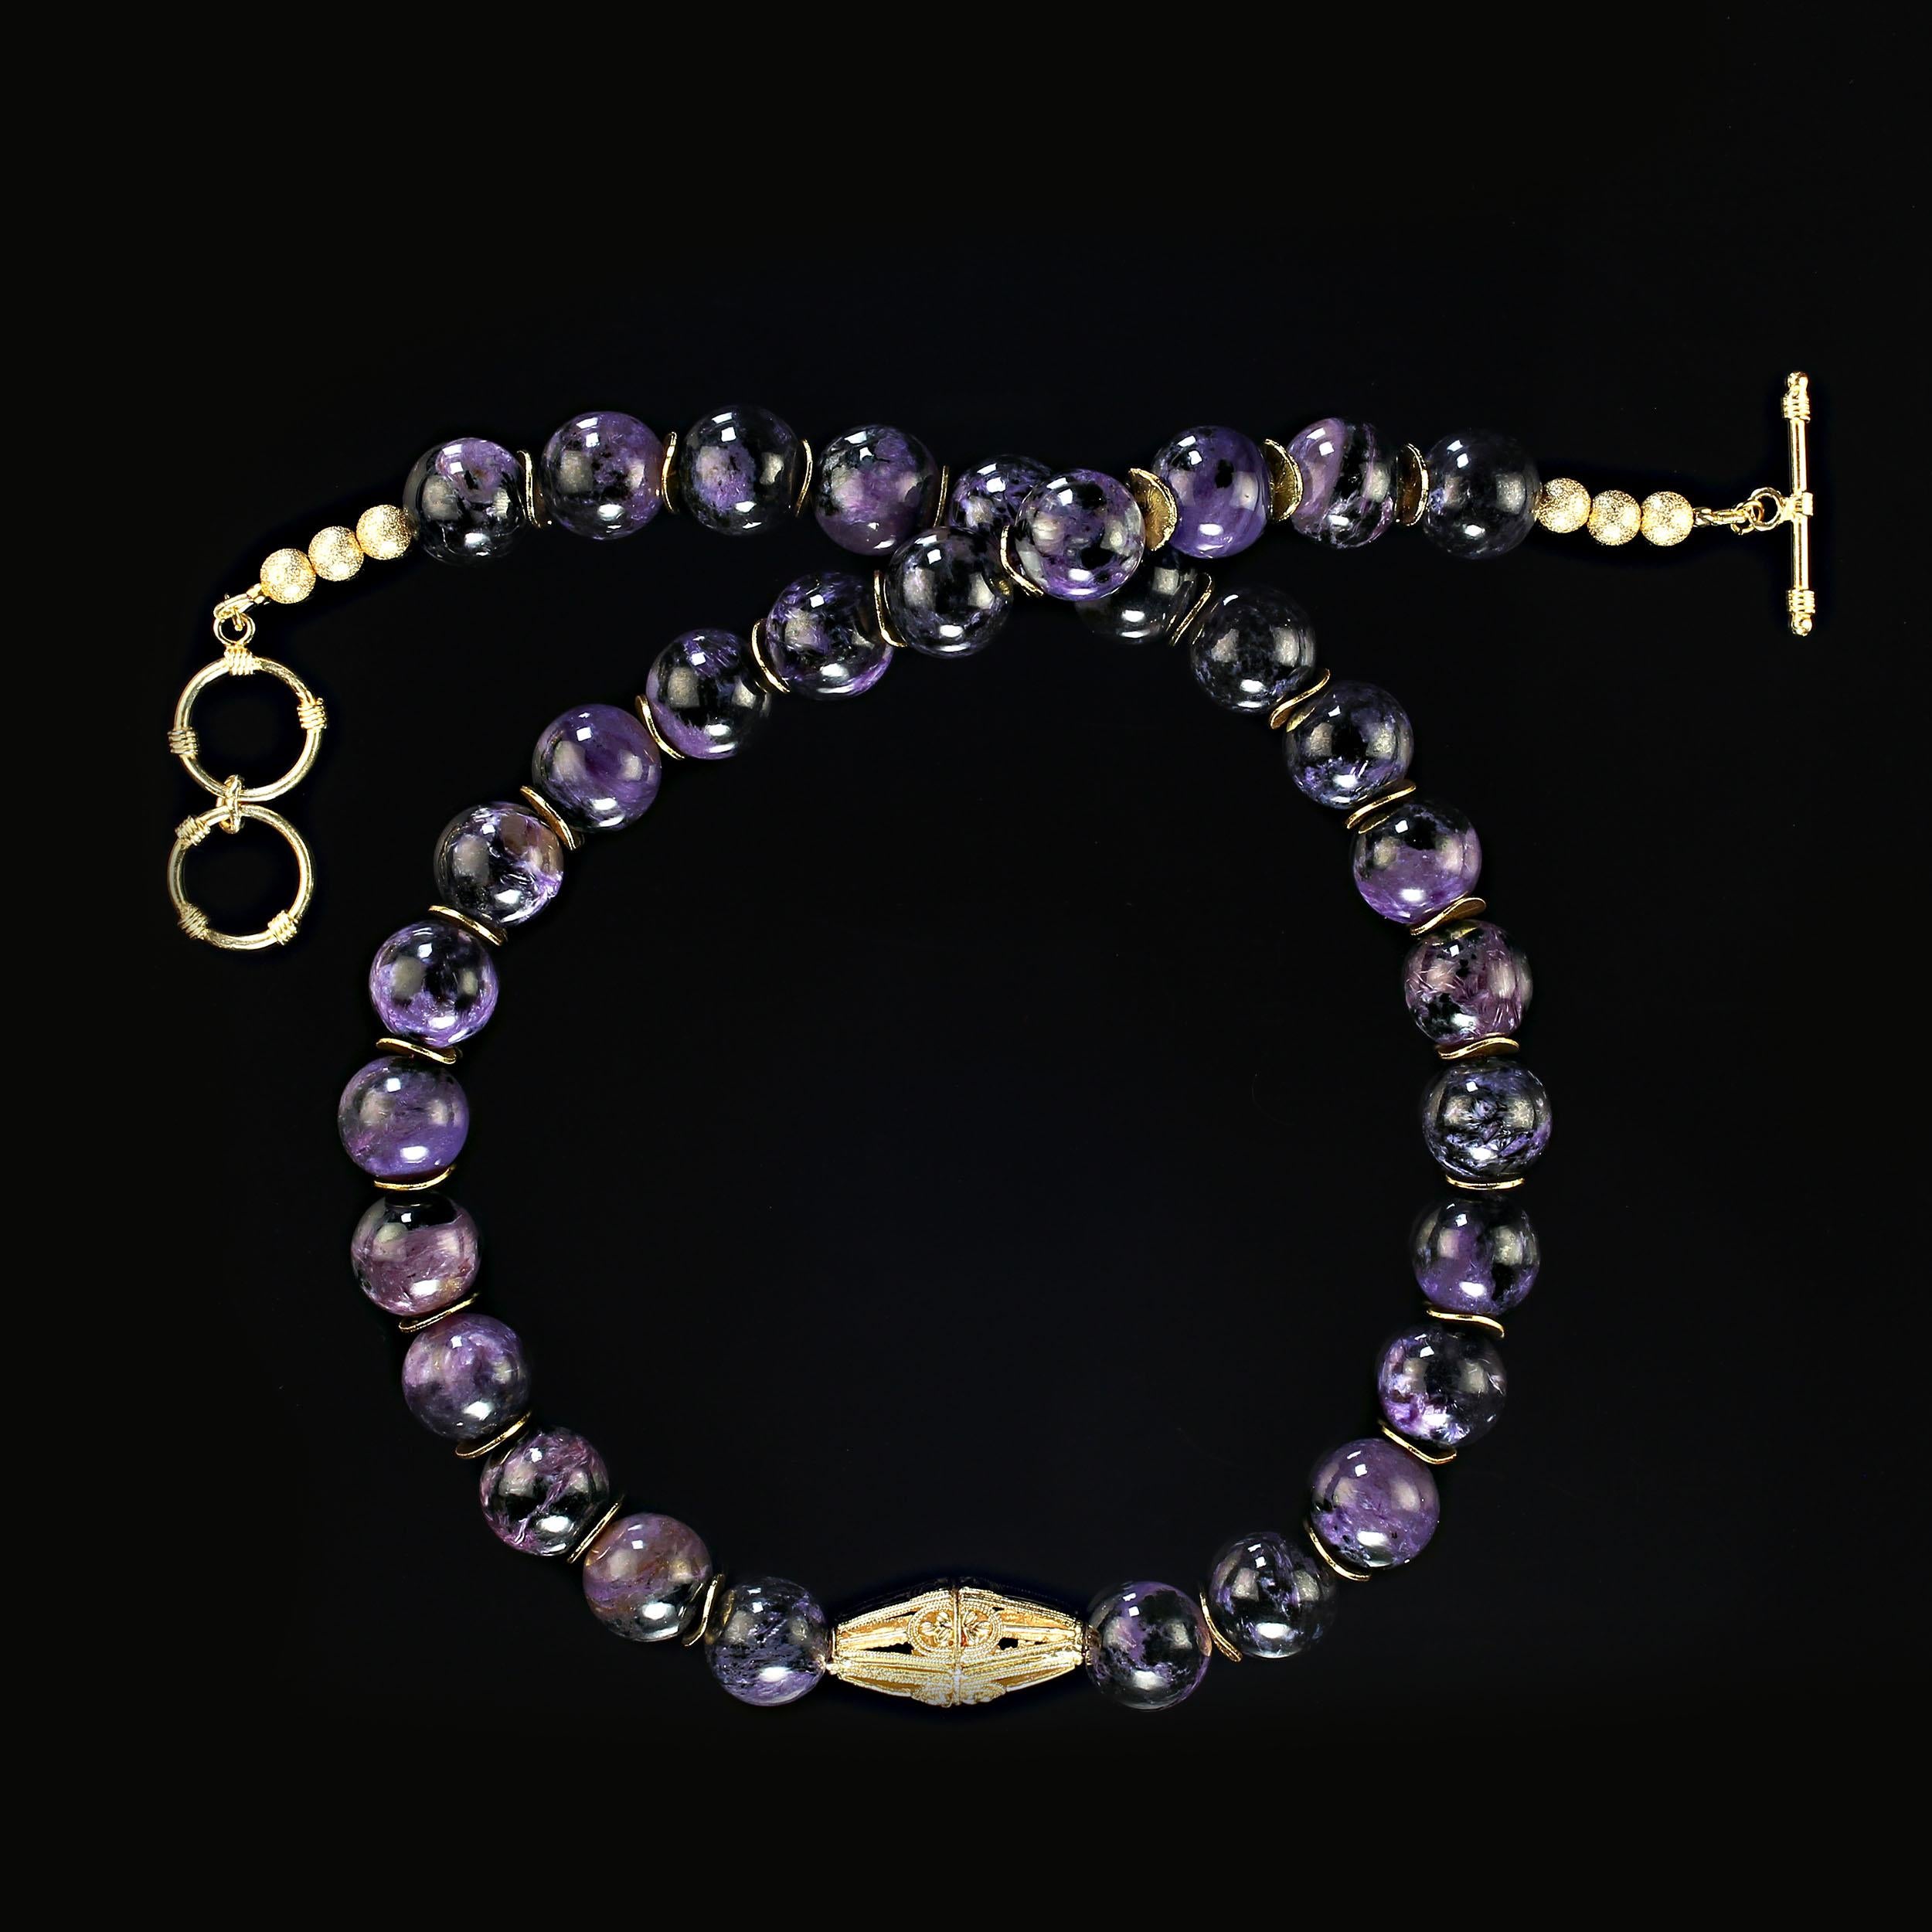 22 Zoll leuchtender Charoit in großen 14 mm Perlen mit einem eleganten goldfarbenen Brennpunkt und goldfarbenen Flatterelementen, die die lila Charoit-Perlen betonen.  Die schwarze Matrix gemischt mit dem Violett hebt jede einzelne Perle hervor. 